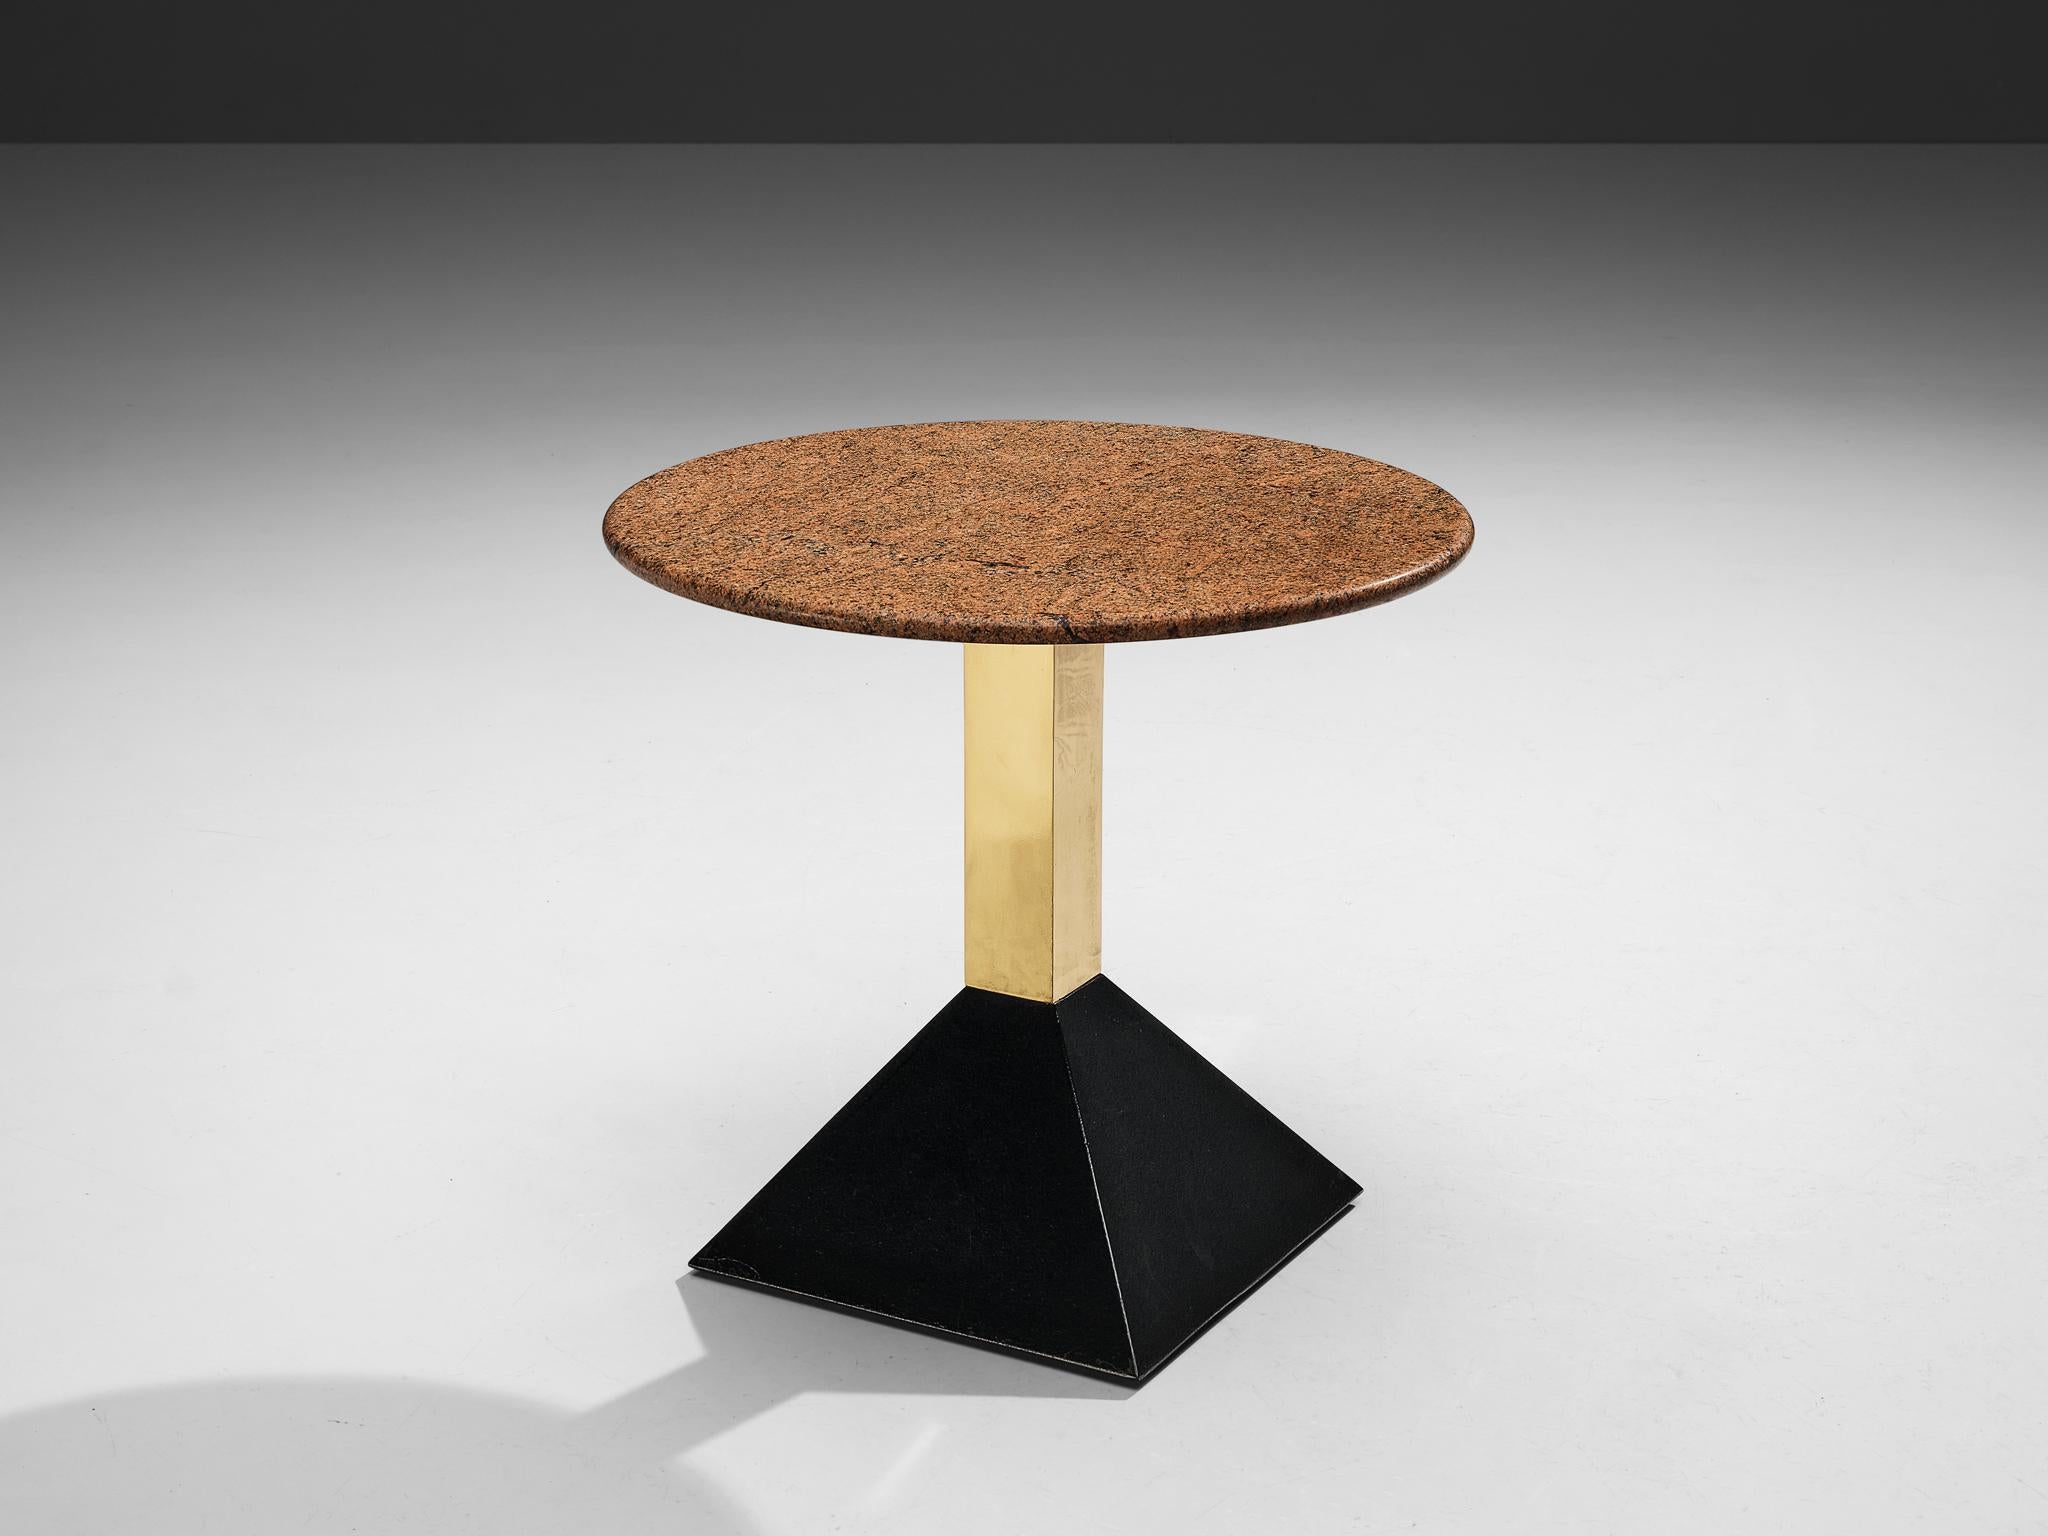 Table d'appoint, granit, métal, laiton, Italie, années 1980

Cette table d'appoint présente un plateau en granit rouge de format rond. Le granit présente une surface vive. Un socle en laiton se termine par une base trapézoïdale noire en métal. La